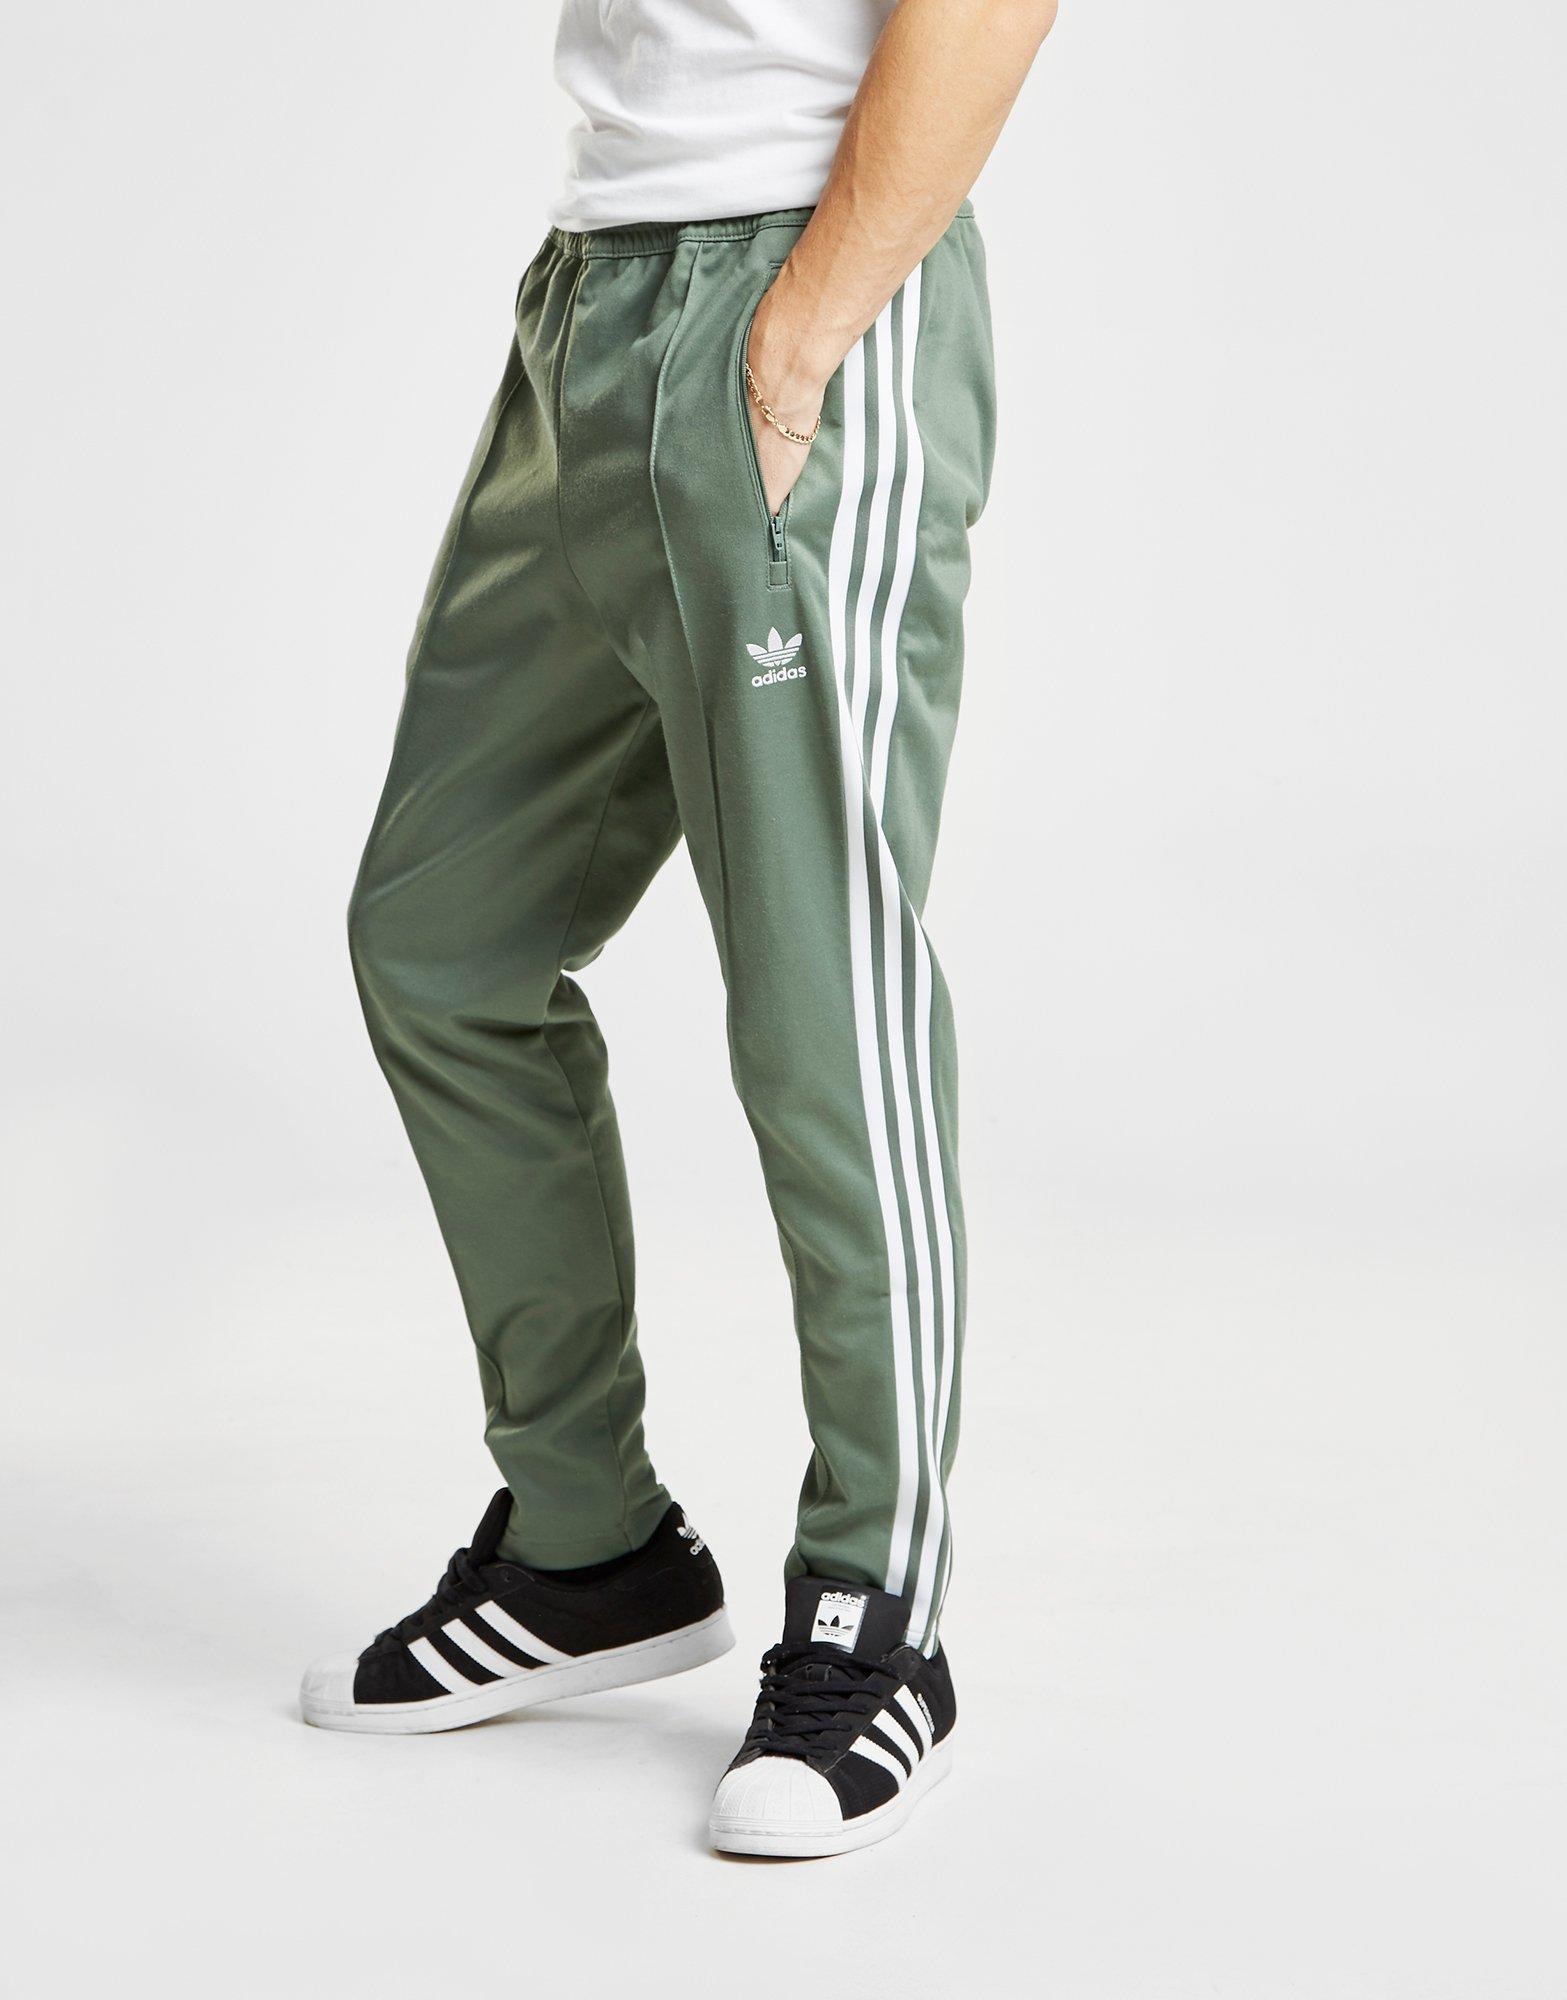 adidas beckenbauer pants green